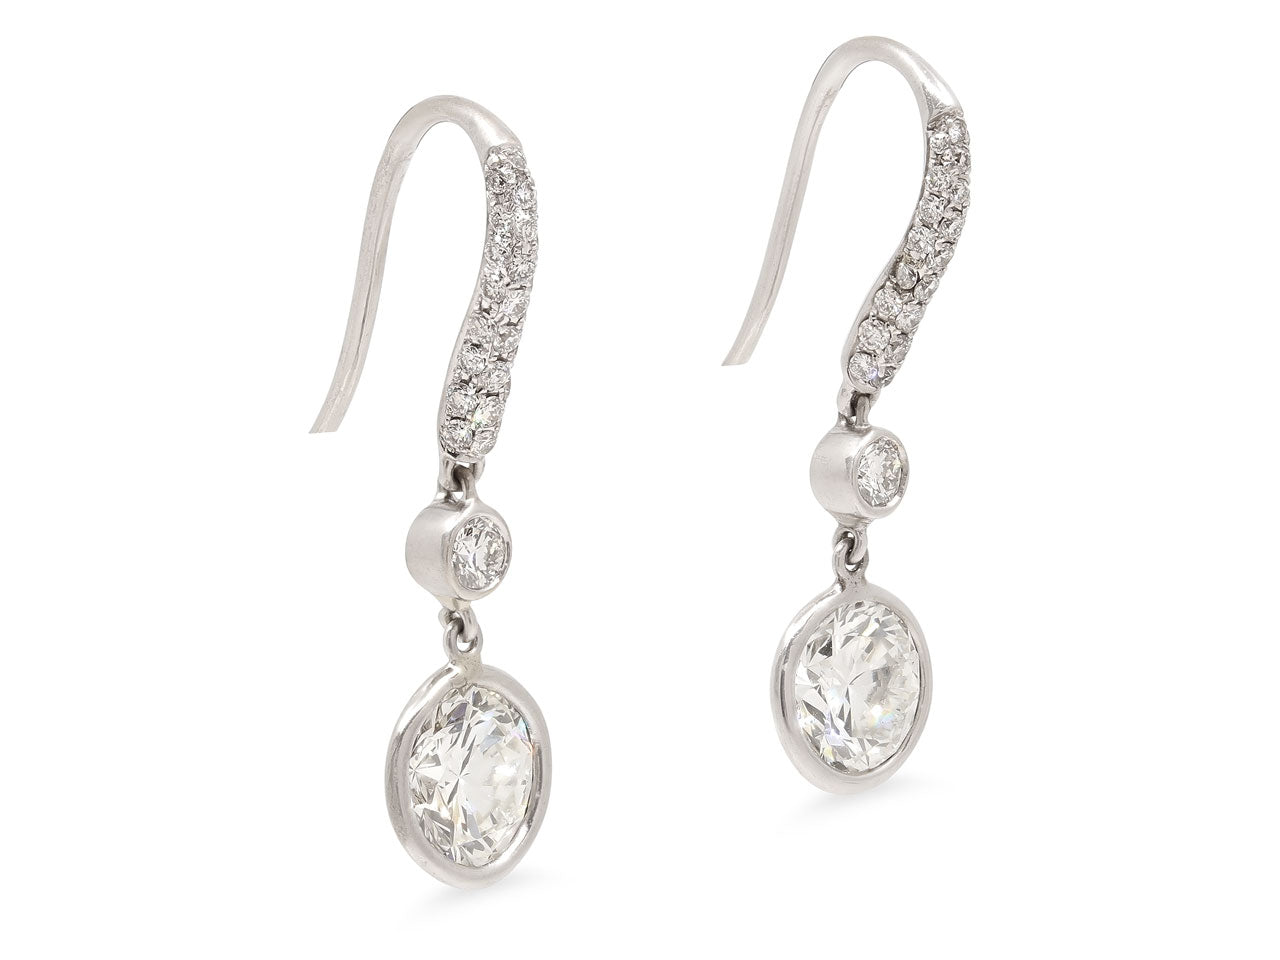 Beladora 'Bespoke' Diamond Dangle Earrings in Platinum and 18K White Gold